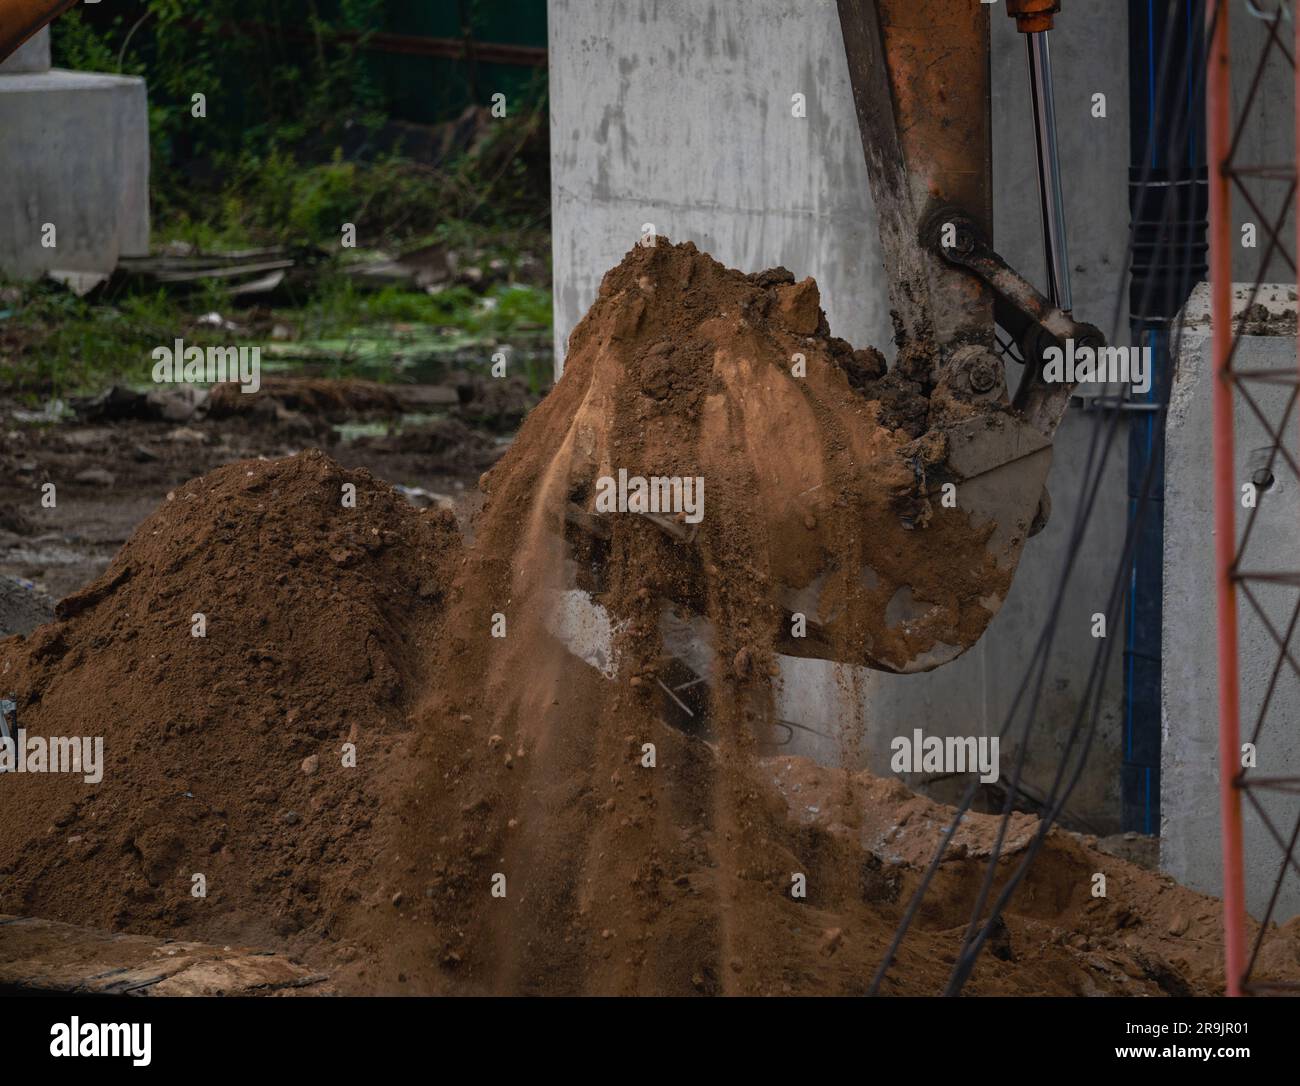 Retroescavatore che opera scavando il terreno in cantiere. Denti della benna del retroescavatore per lo scavo di sabbia. Escavatore cingolato che scava sul terreno. Macchina da scavo. Foto Stock